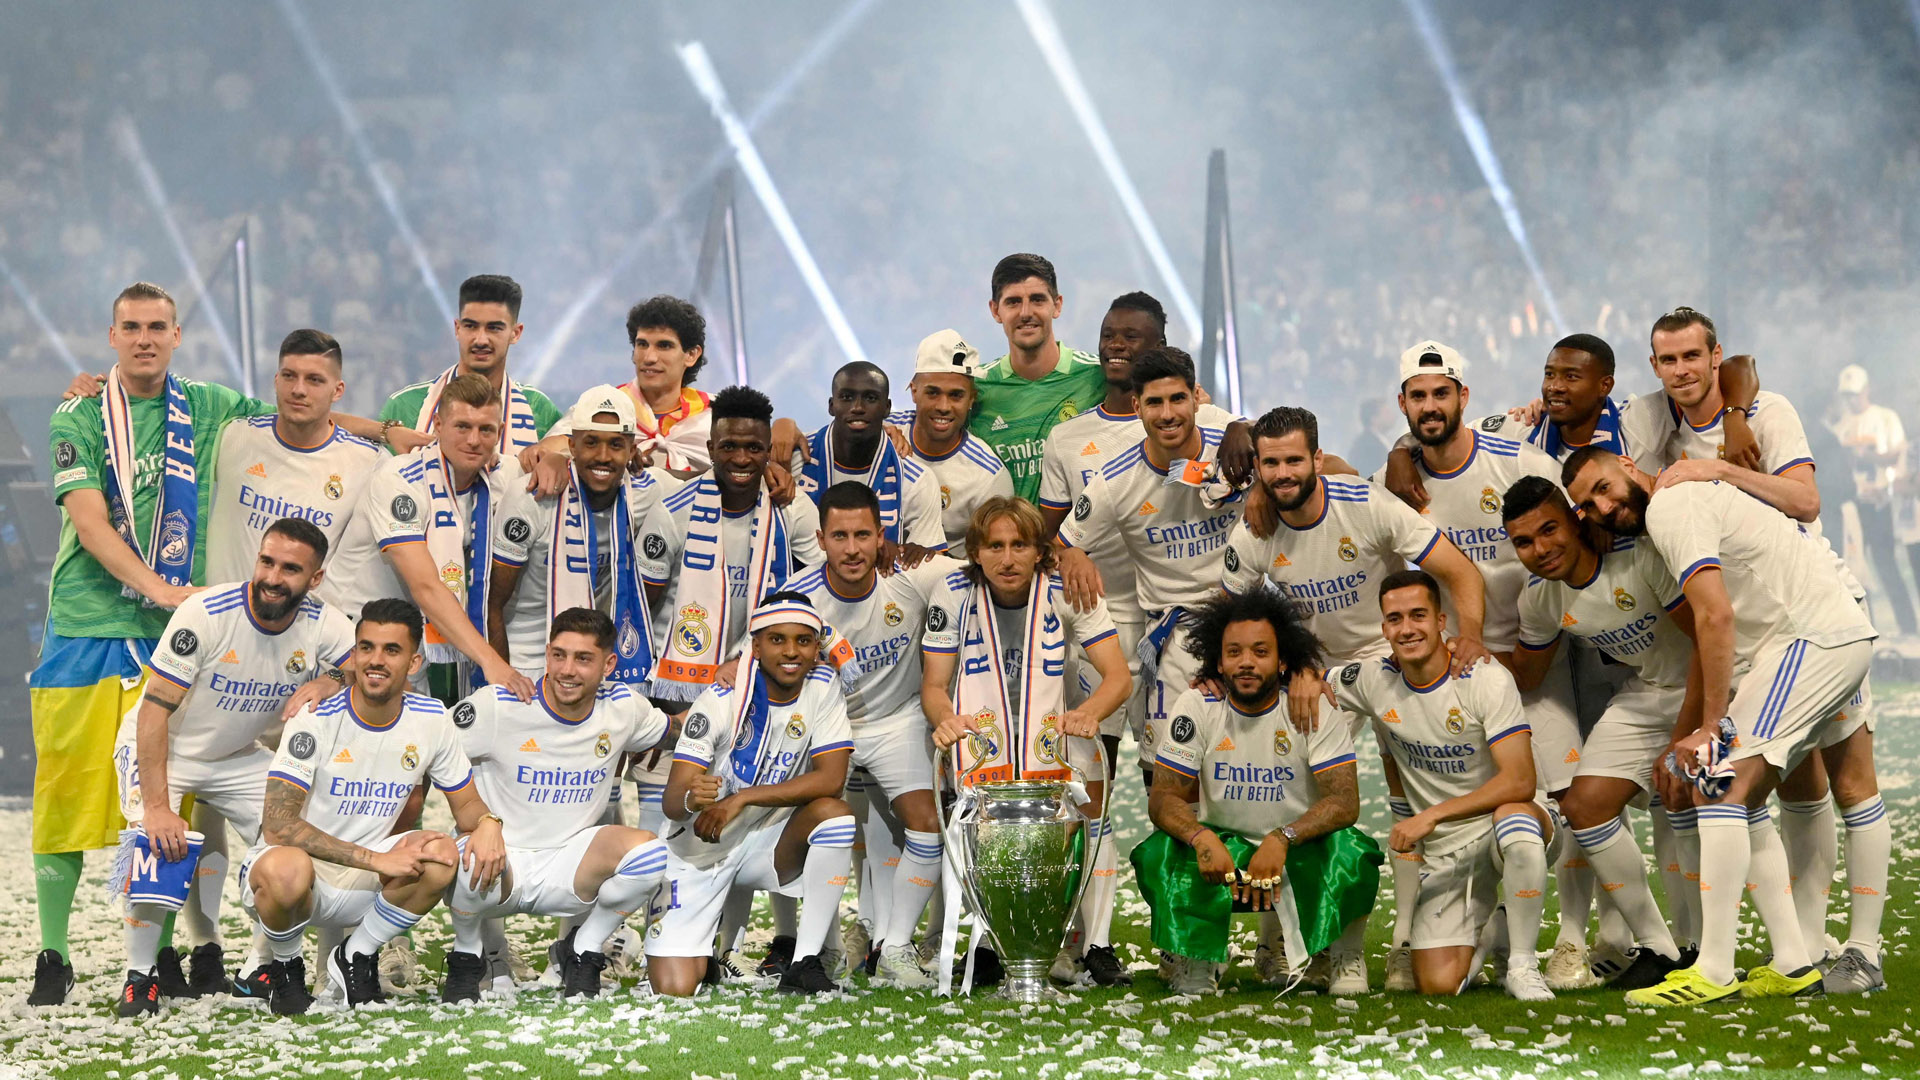 Estudio Estadio - Celebración Champions Real Madrid